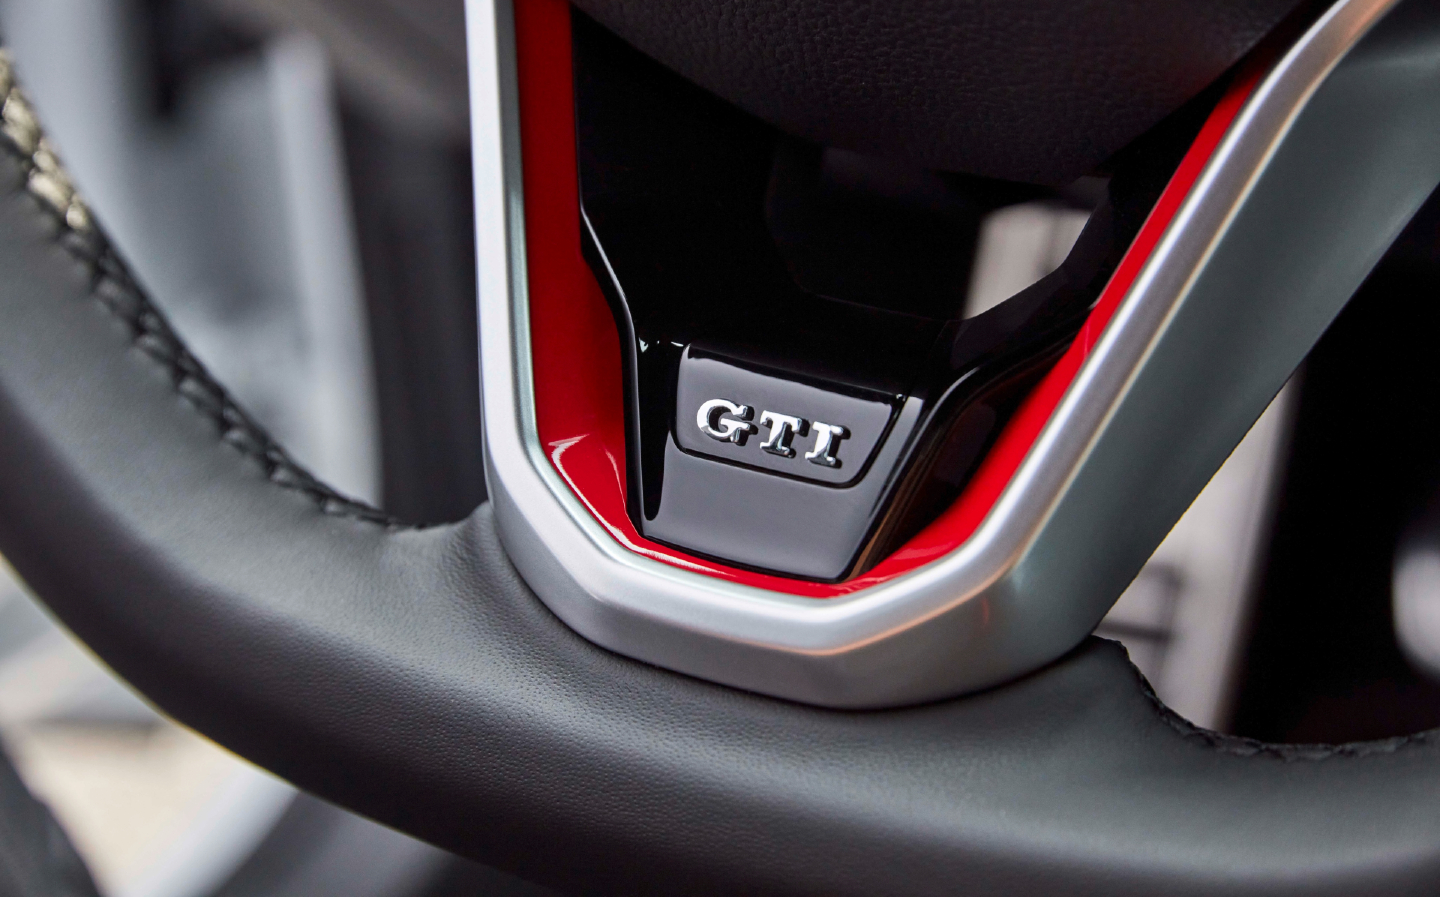 Volkswagen Golf GTI badging on Mk8 steering wheel